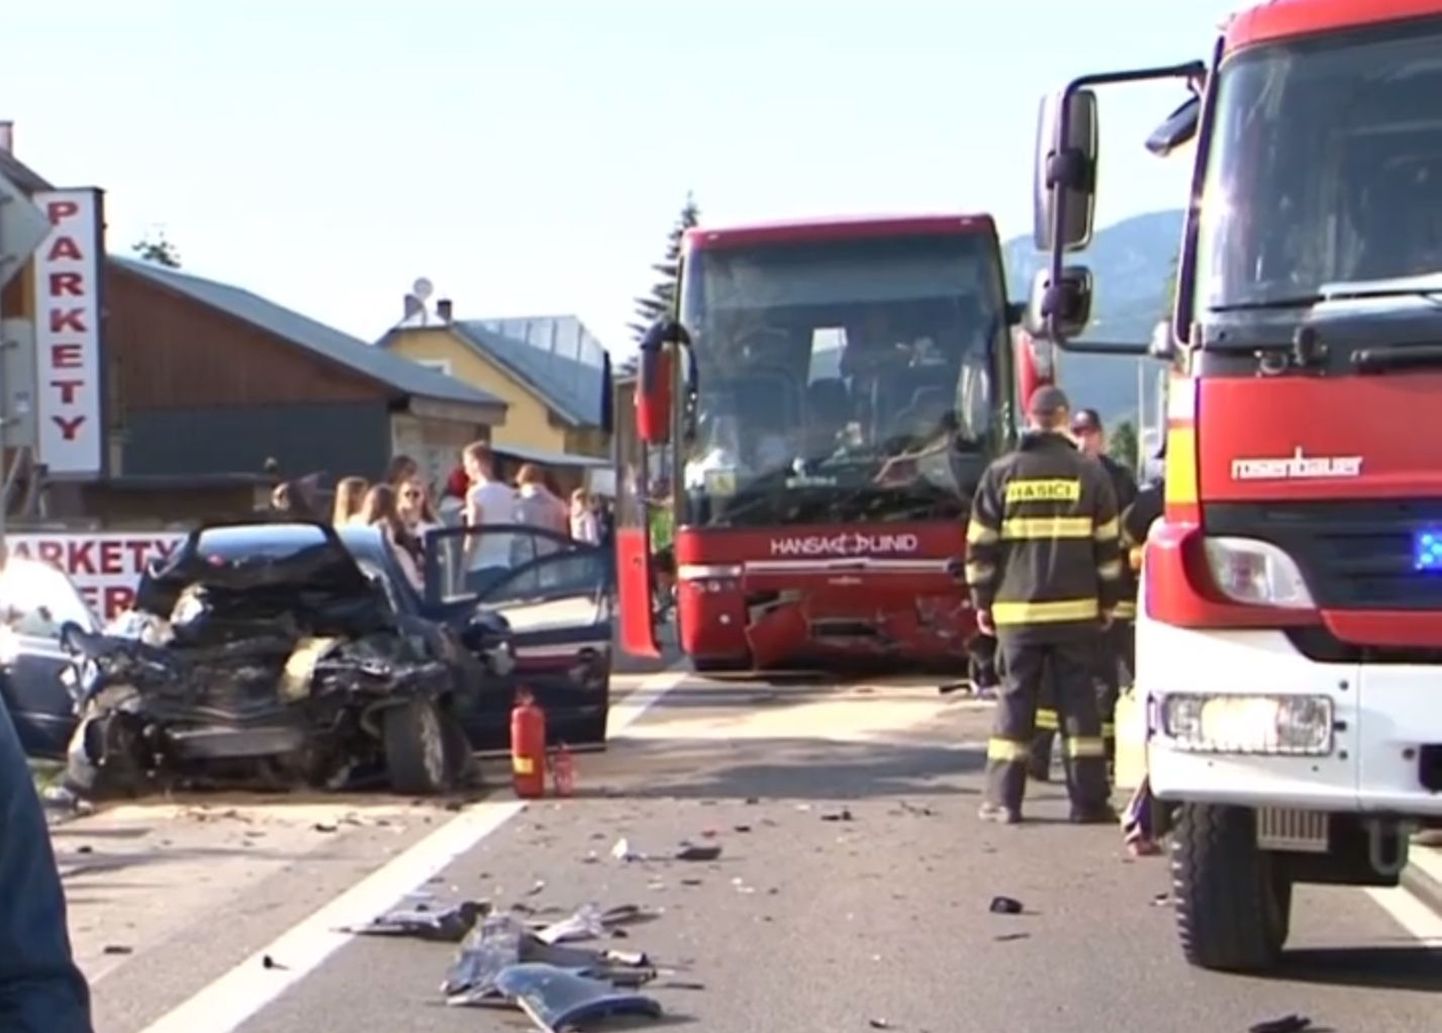 Õnnetus jõudis ka Slovakkia uudisteportaali Noviny.sk uudistesaatesse.